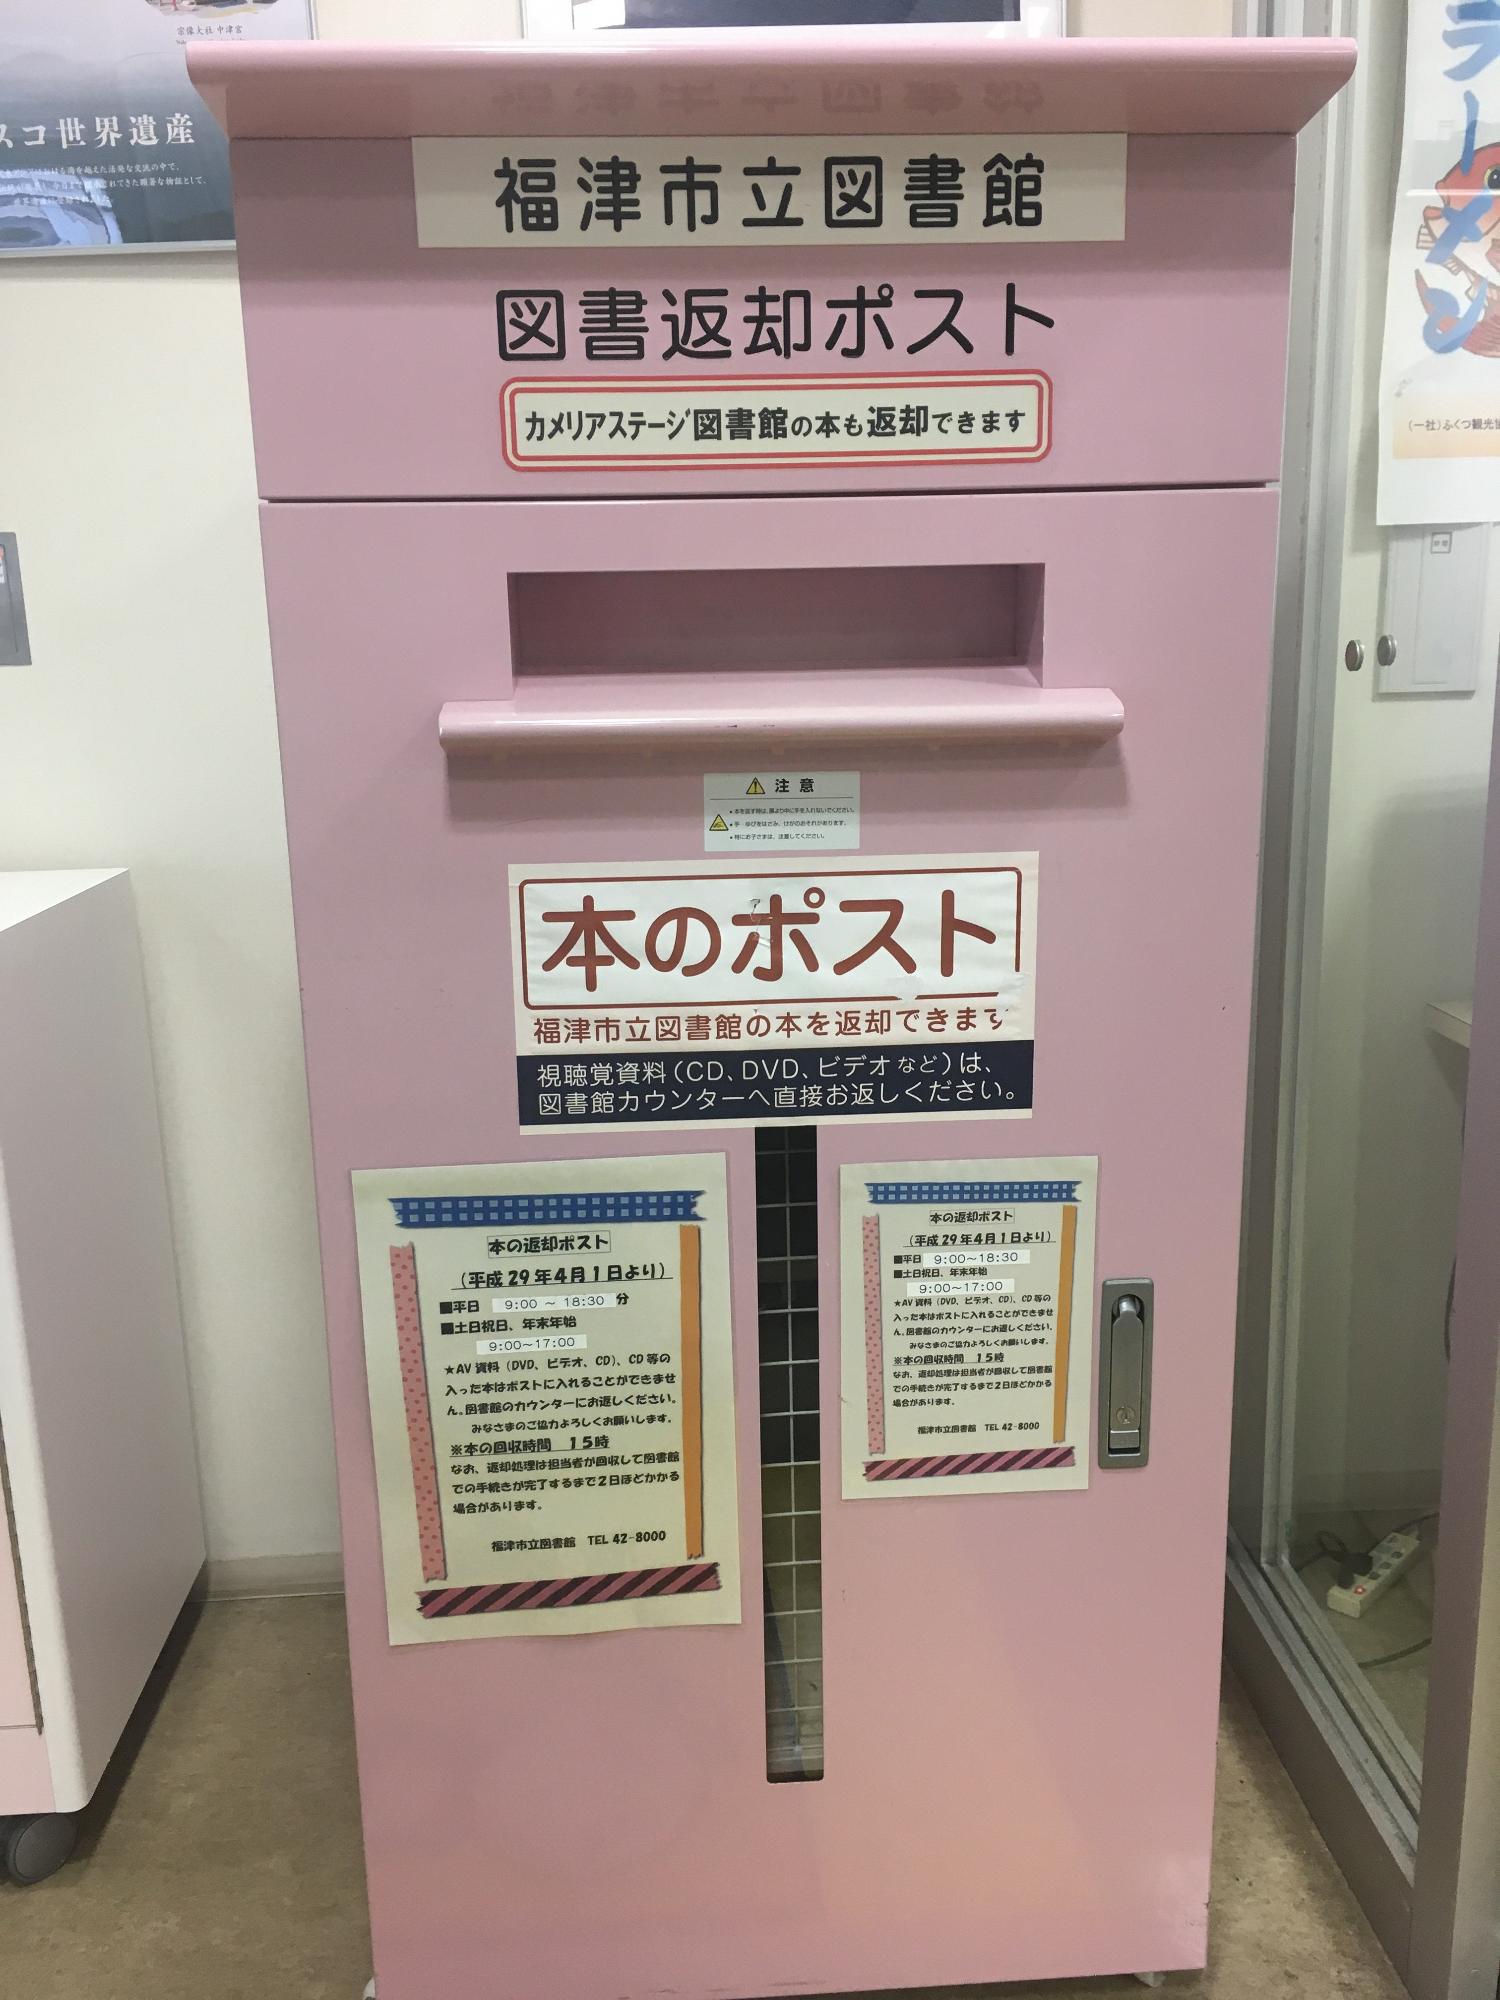 「福津市行政・観光情報ステーション」の入口に設置された桃色の図書返却ポストの写真